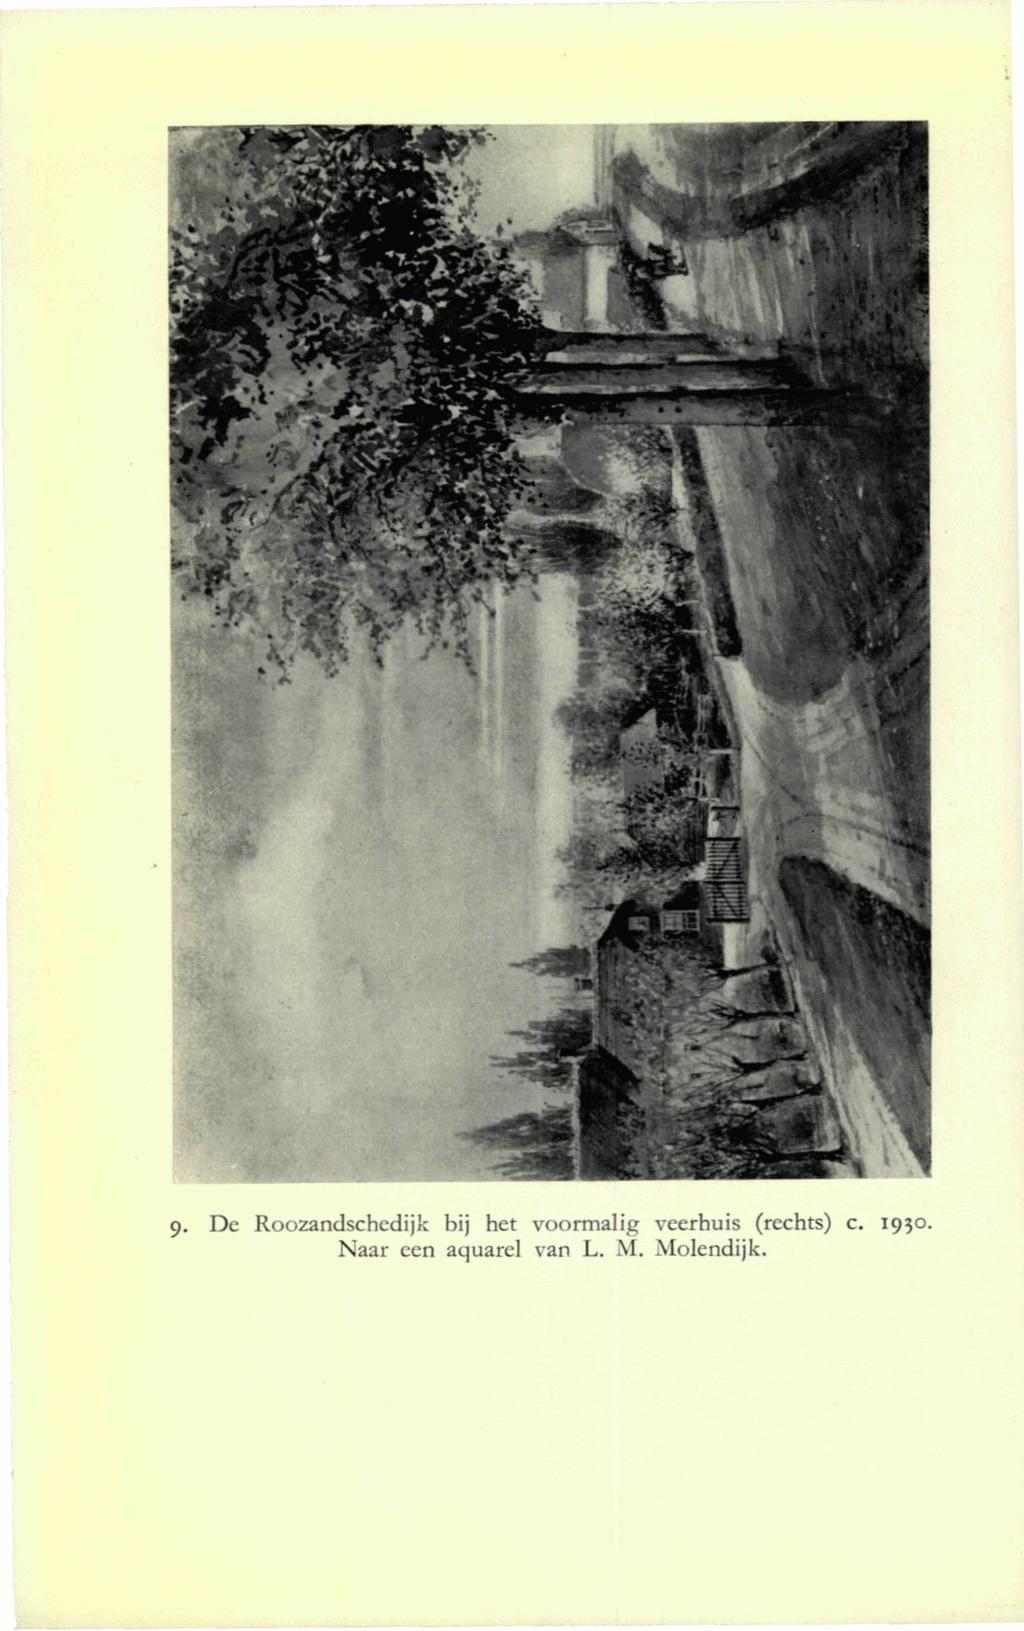 9- De Roozandschcdijk bij het voormalig veerhuis